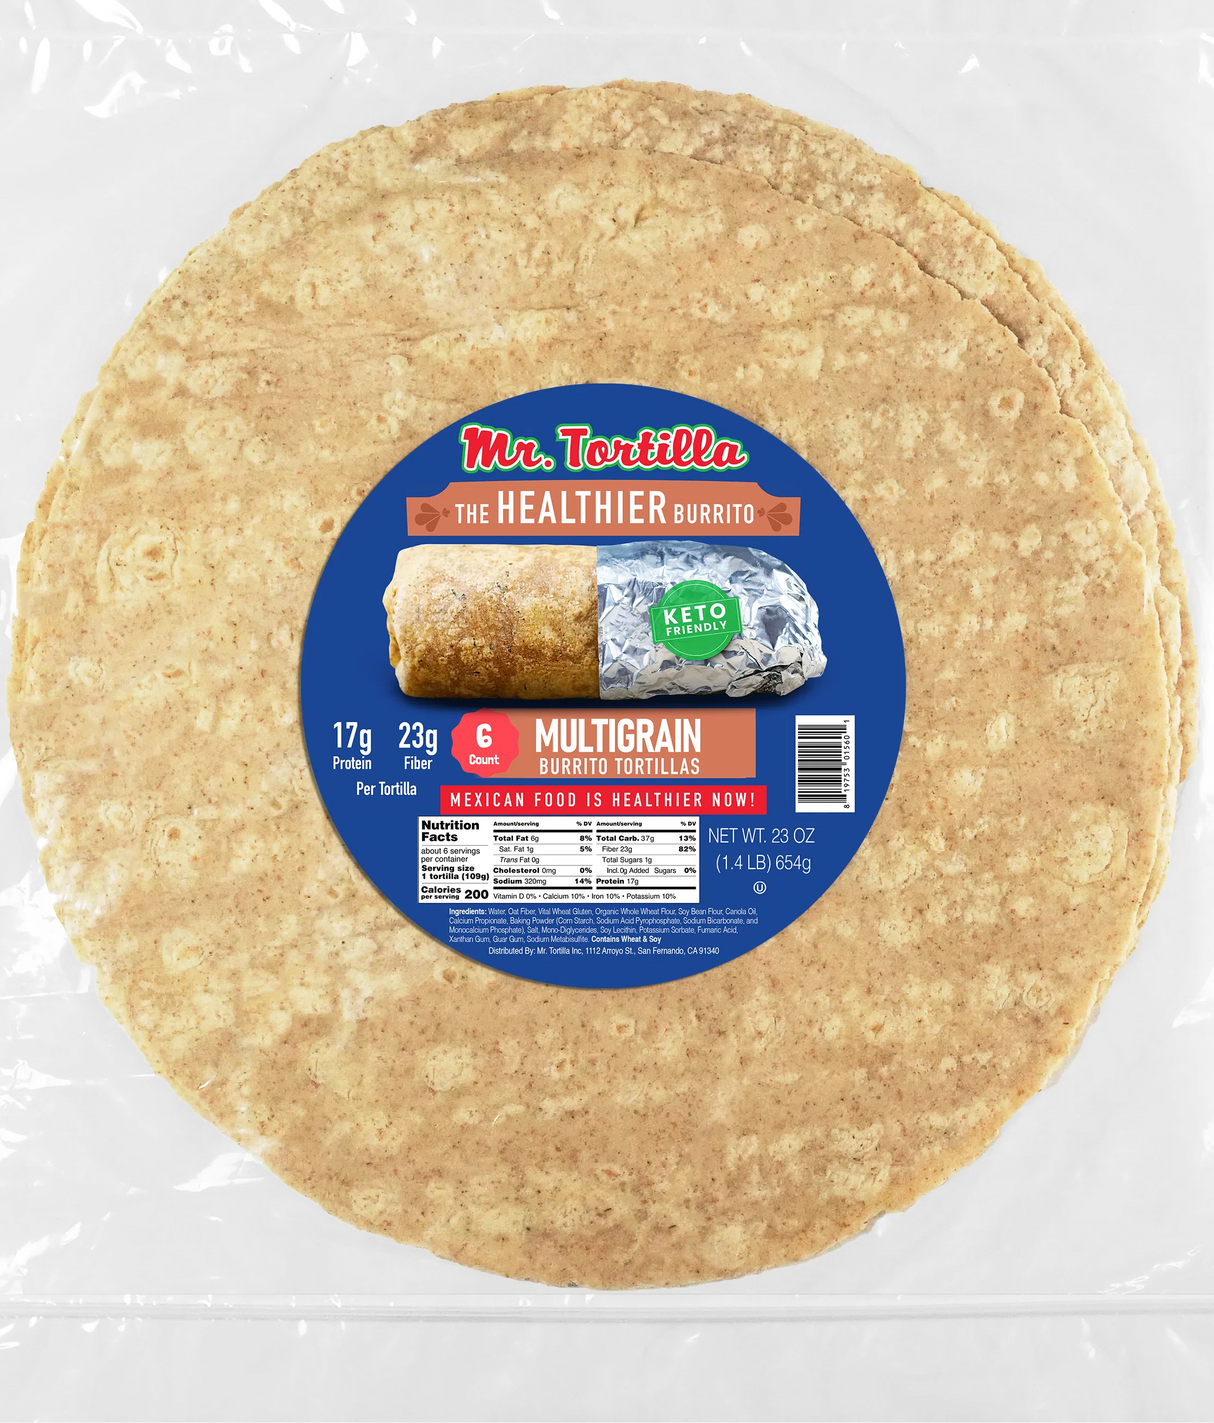 Mr. Tortilla's Healthier Burrito - Multigrain - 6 wraps